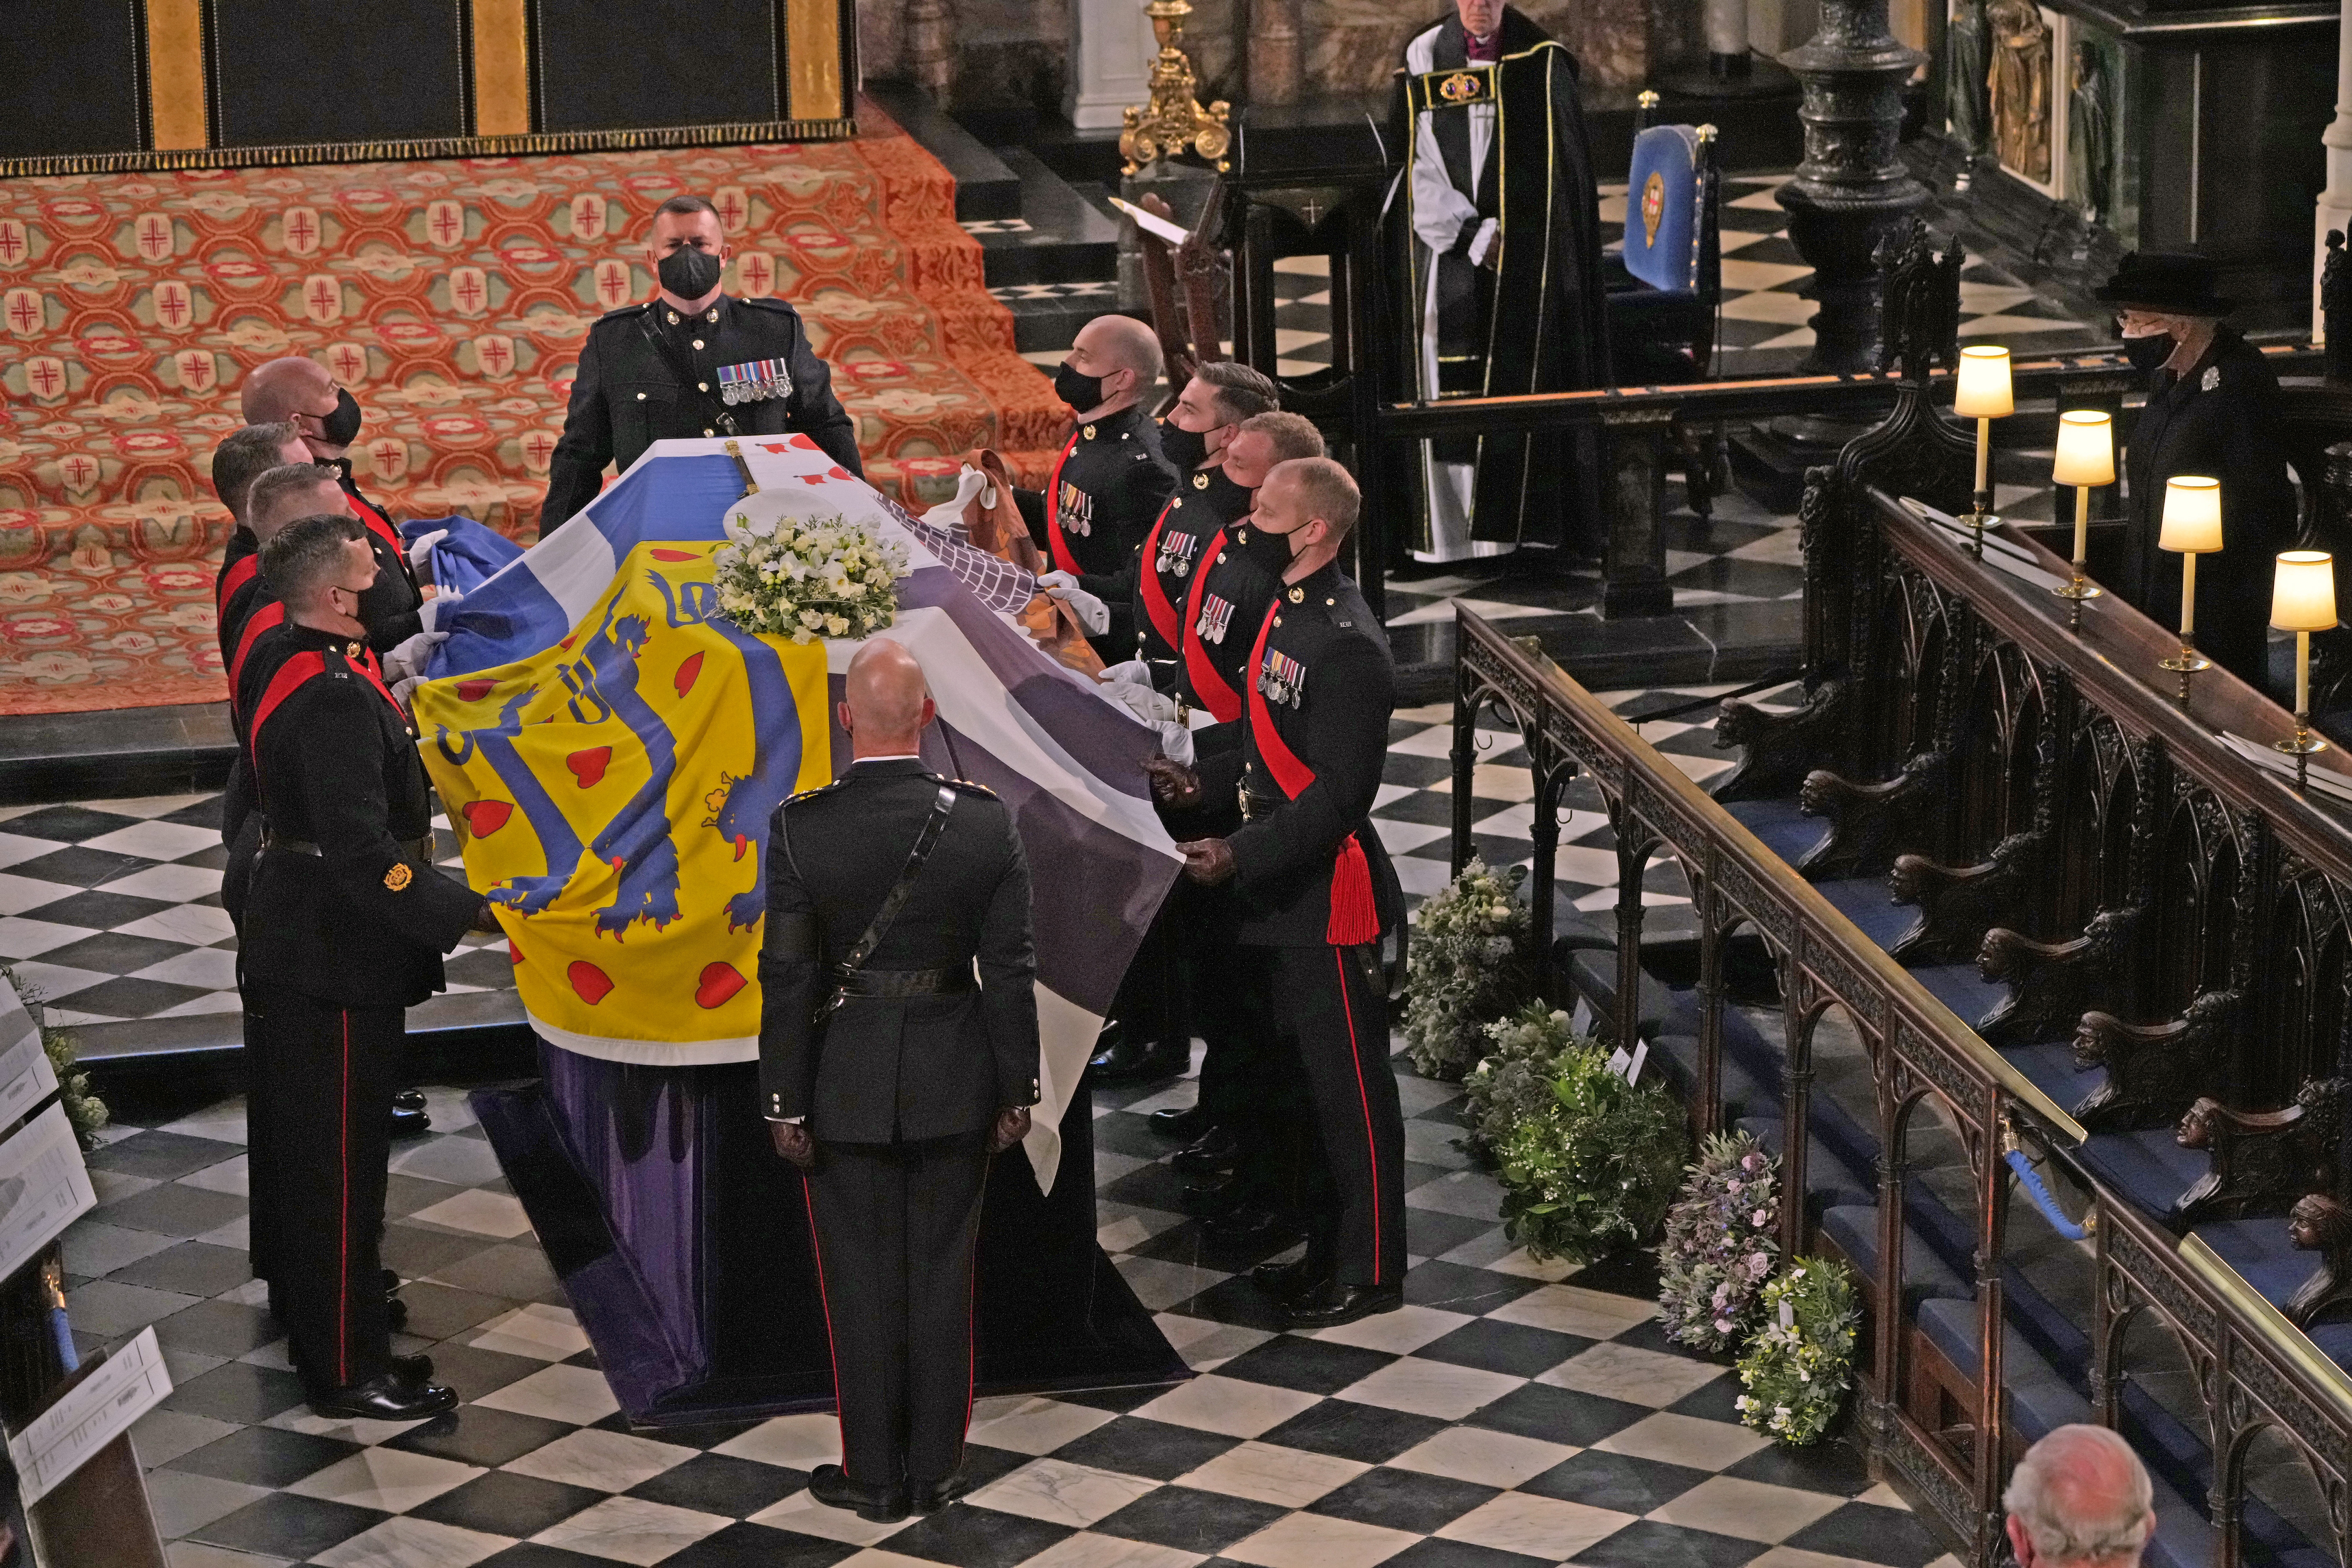 Les funérailles du prince Philip, duc d'Édimbourg au château de Windsor le 17 avril 2021 | Source : Getty Images